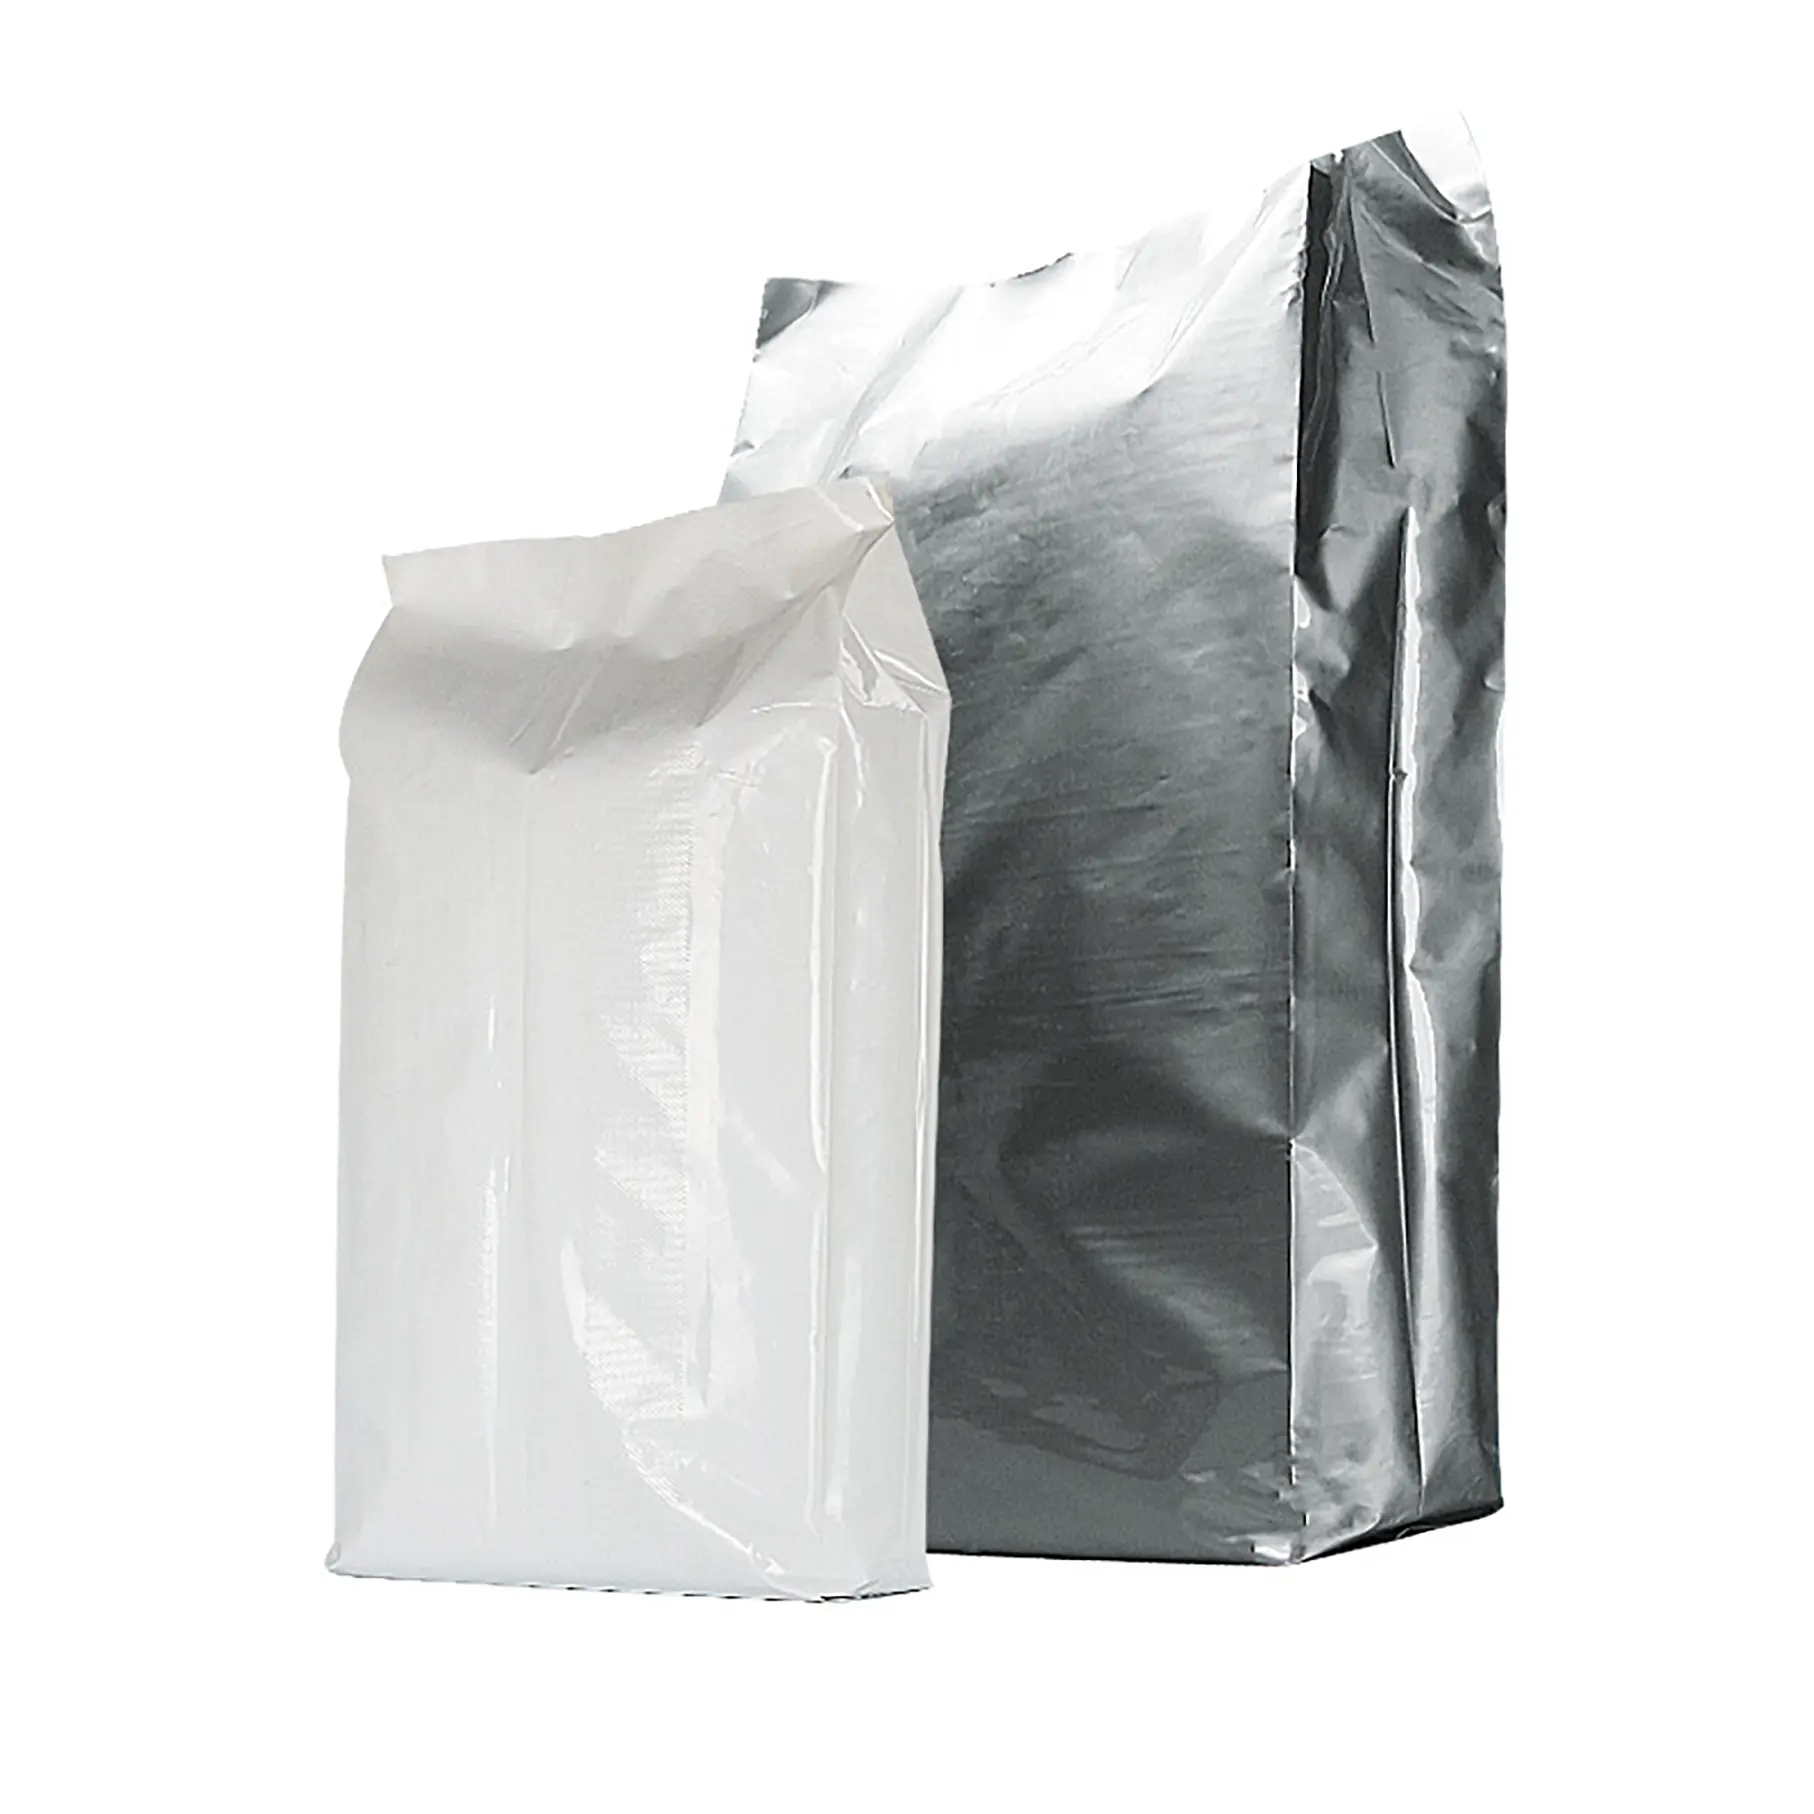 Sacos plásticos para embalagem de fertilizantes PE, sacos plásticos para uso agrícola, à prova d'água de alta qualidade, 15kg, 20kg, 25kg e 50kg com impressão personalizada